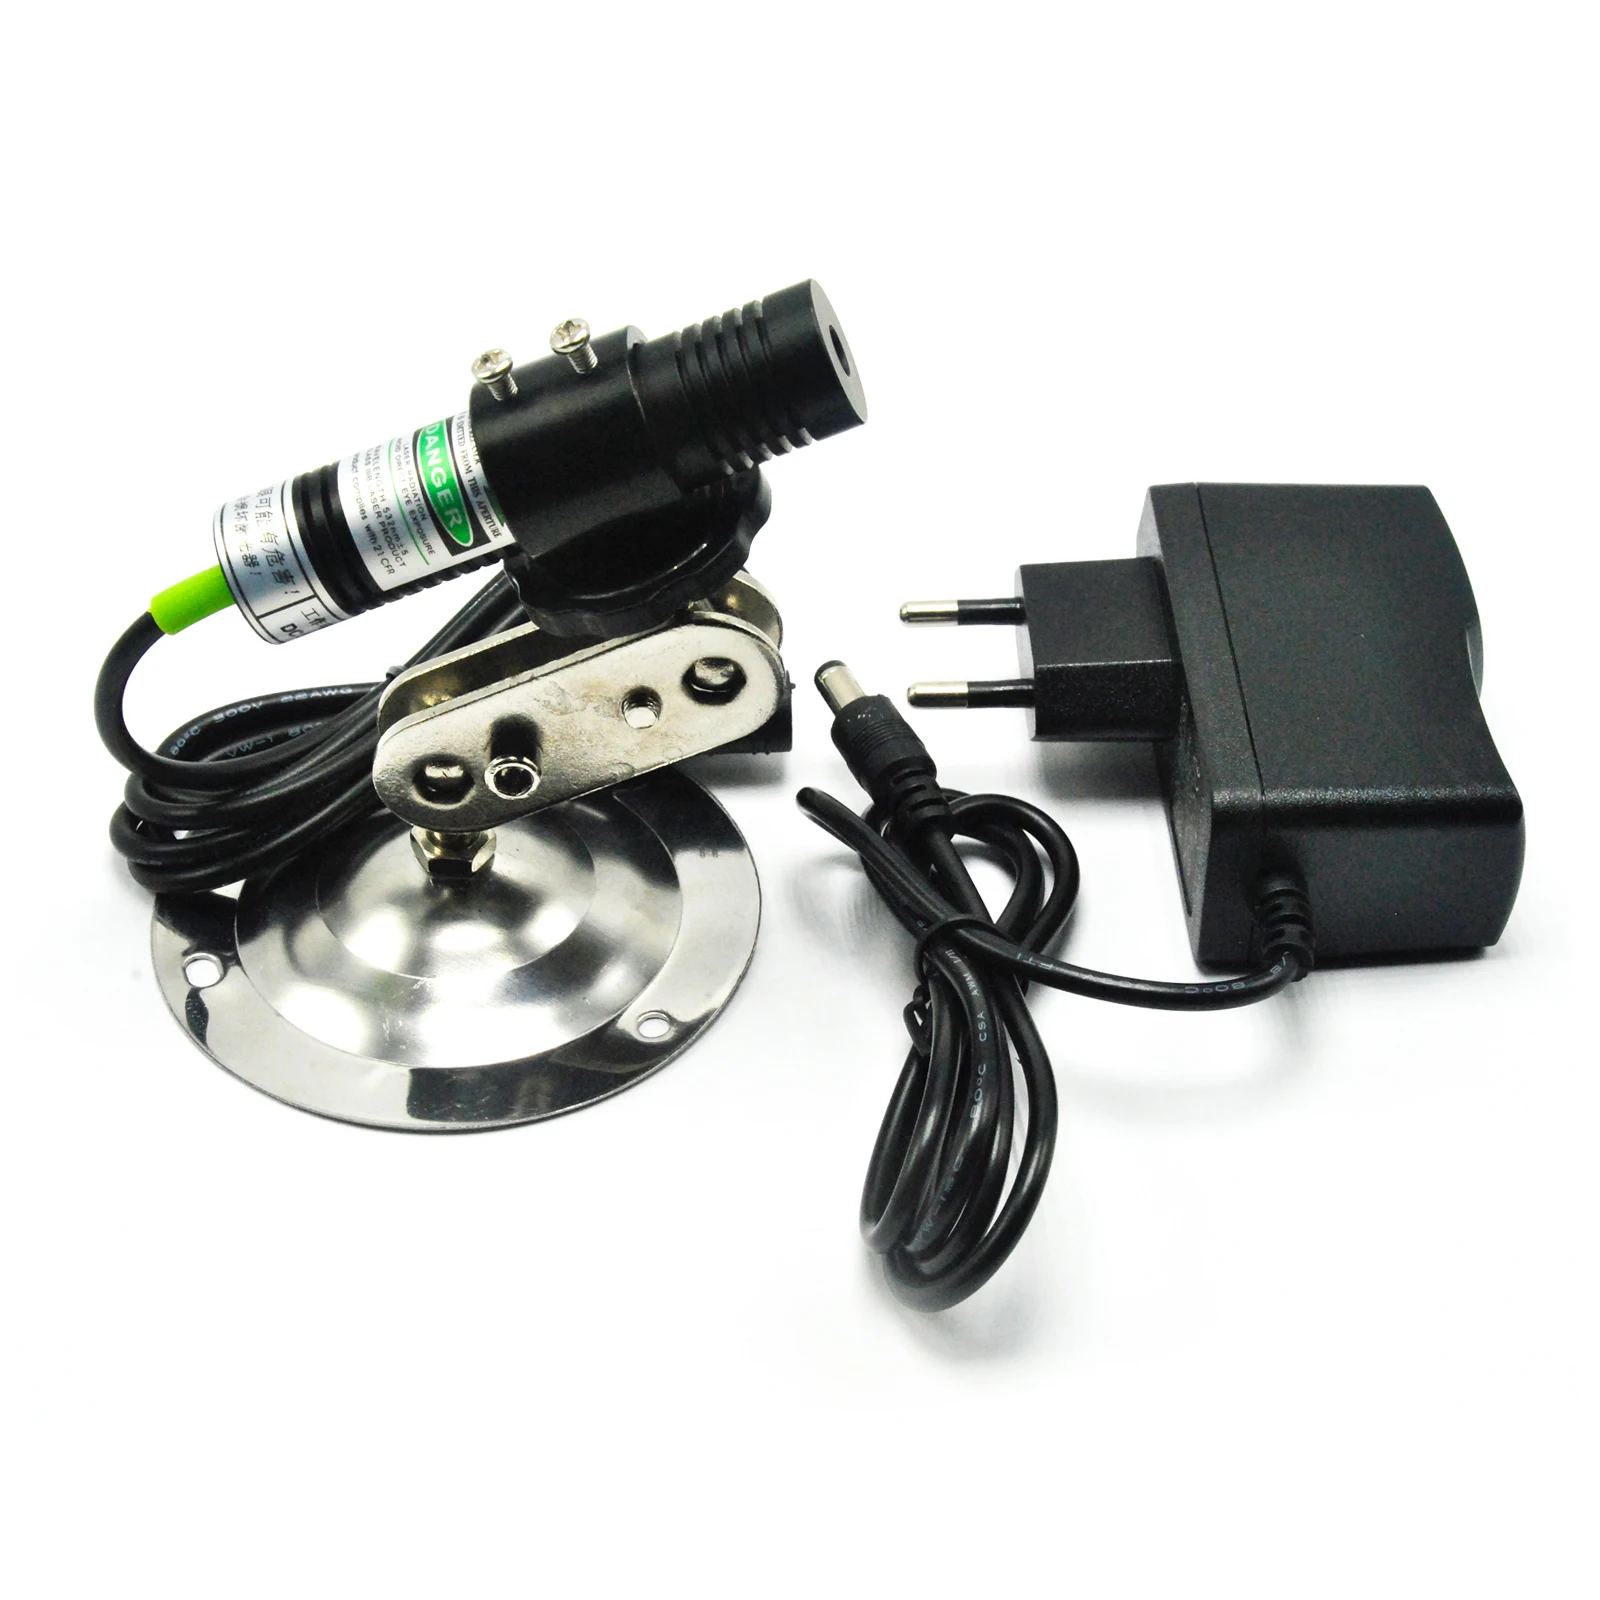 Модуль-локатор точки зеленого лазера 532нм 30 мВт для режущего станка + адаптер + крепление от AliExpress RU&CIS NEW